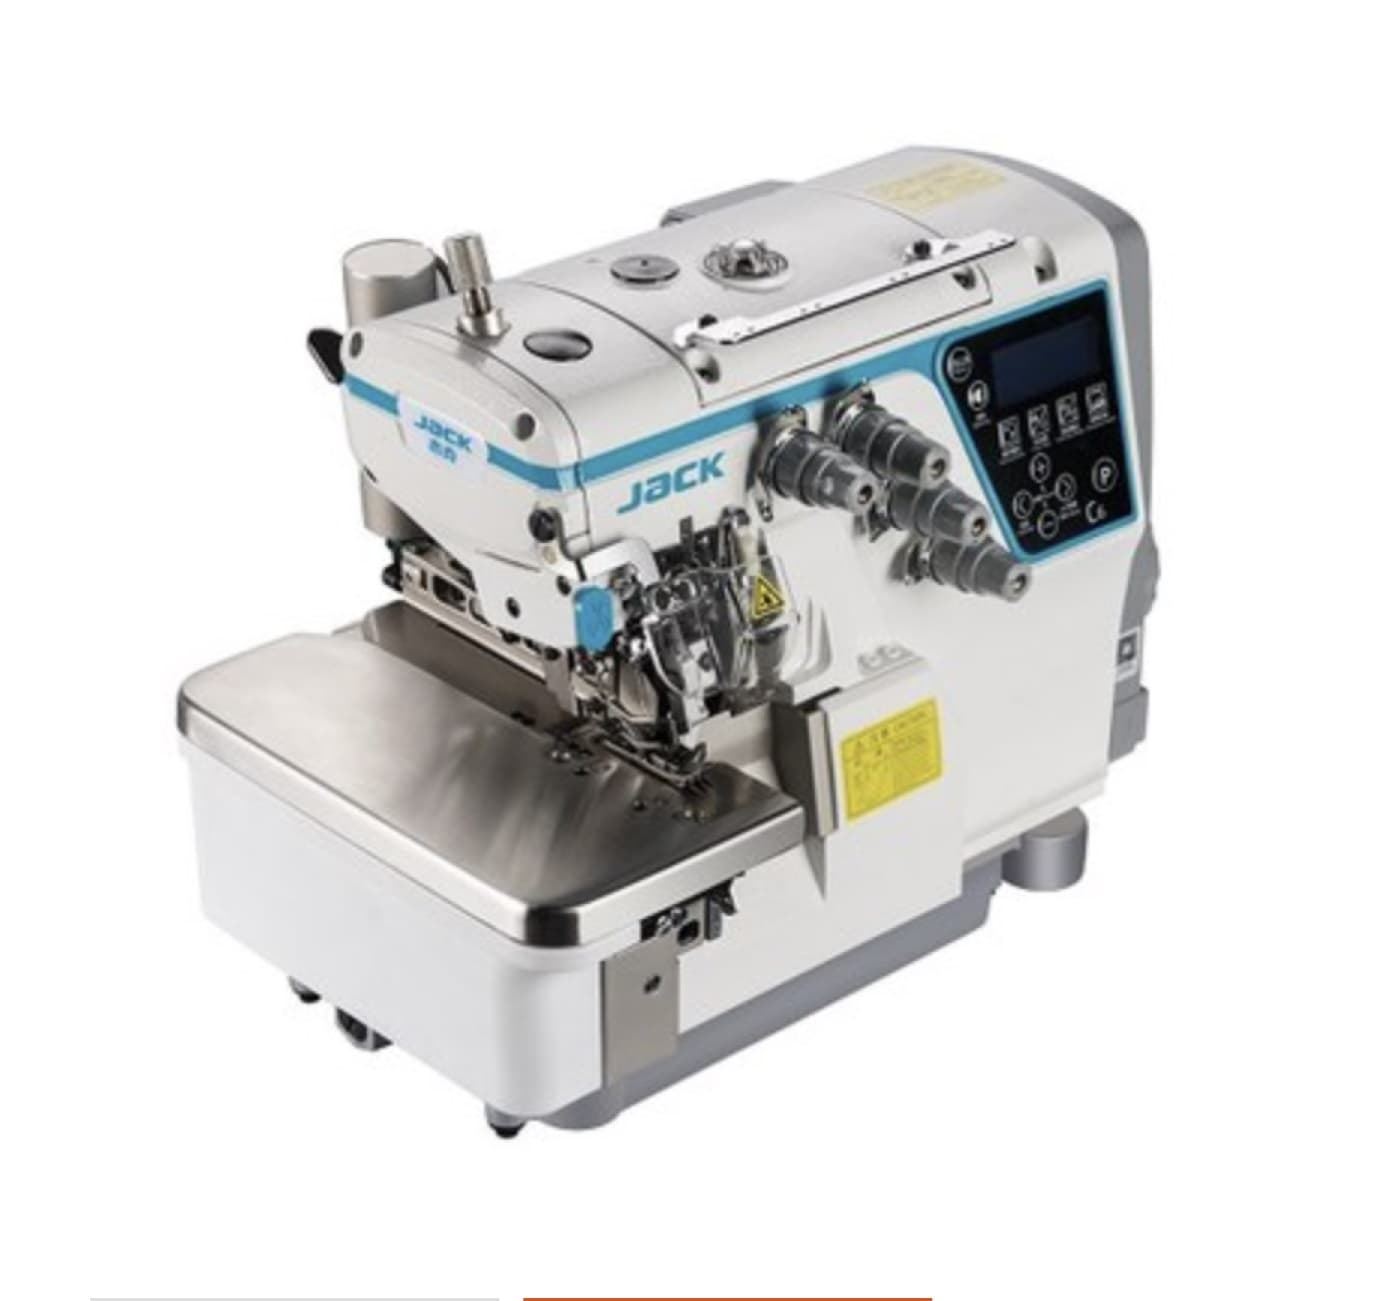 JACK C6-5-03-333 AUTOMÁTICA (5 HILOS) - Máquina de coser industrial remalladora - Imagen 5